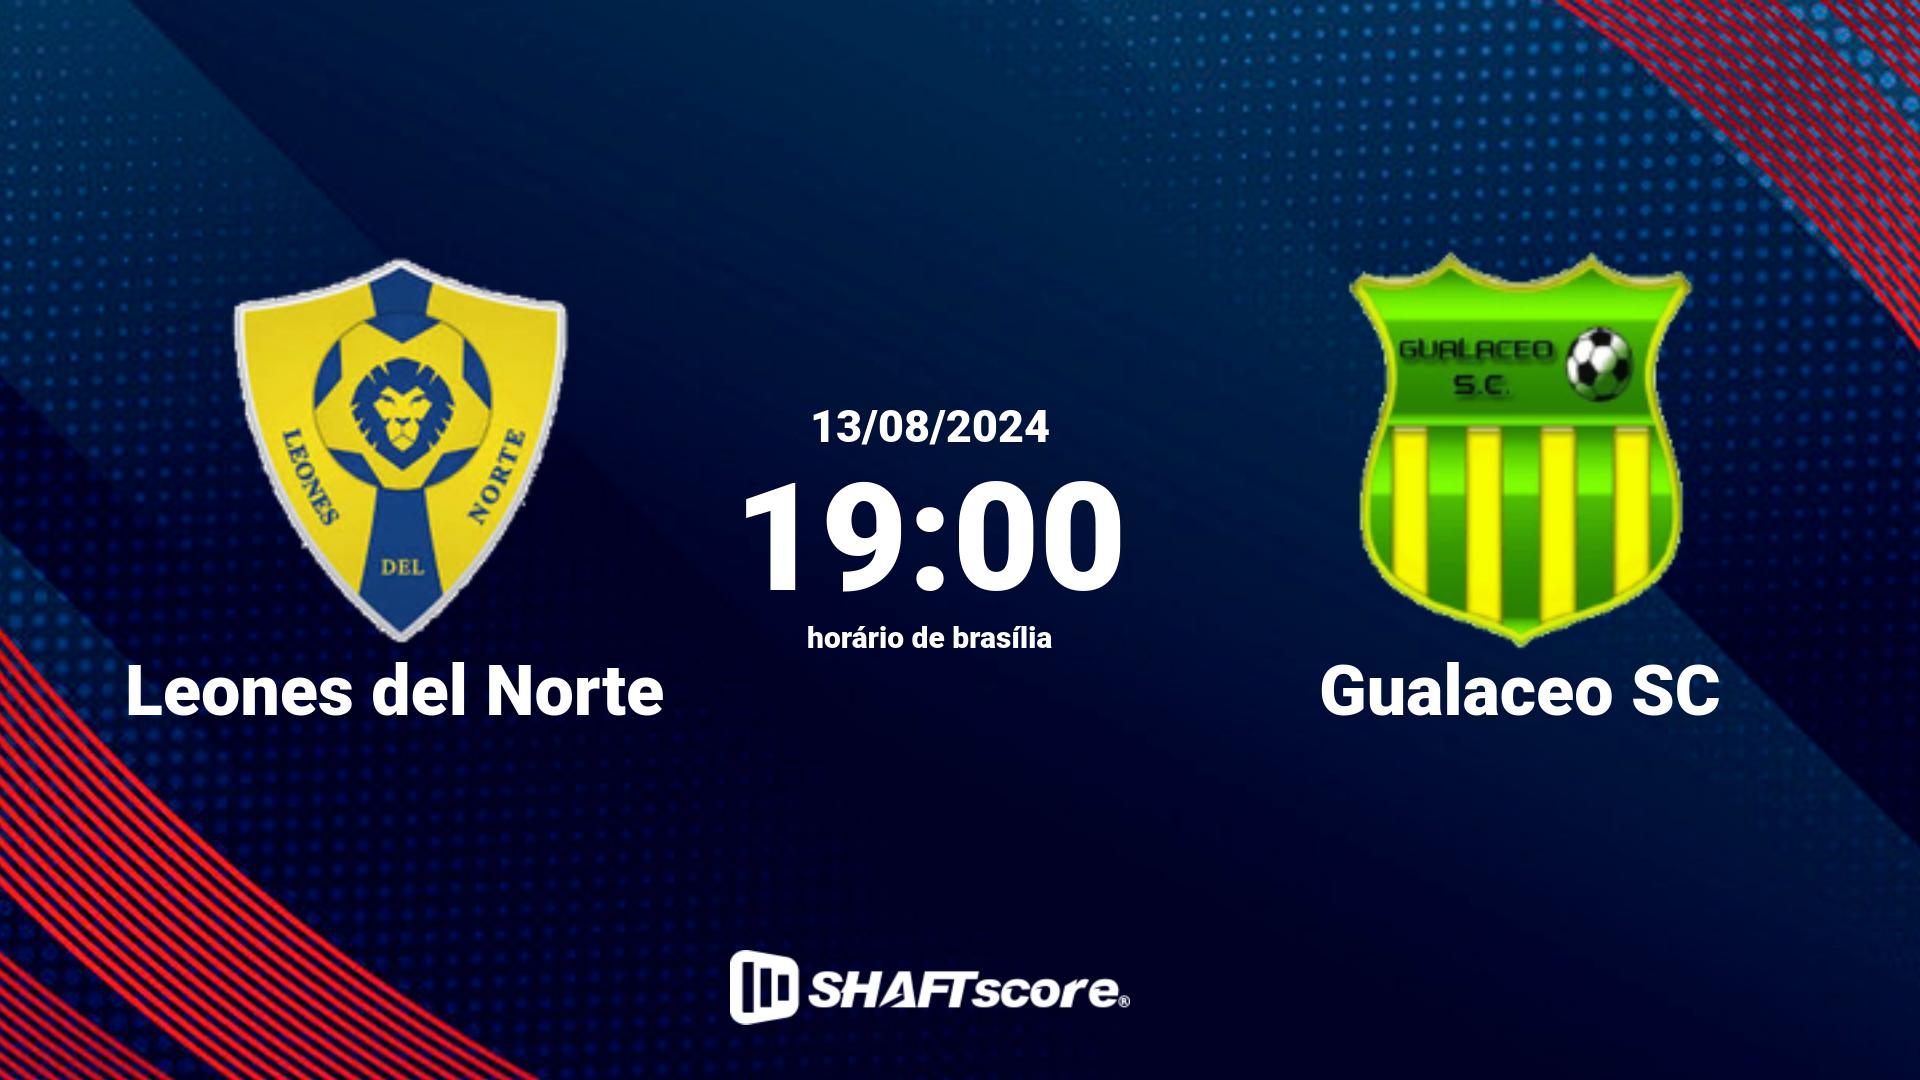 Estatísticas do jogo Leones del Norte vs Gualaceo SC 13.08 19:00